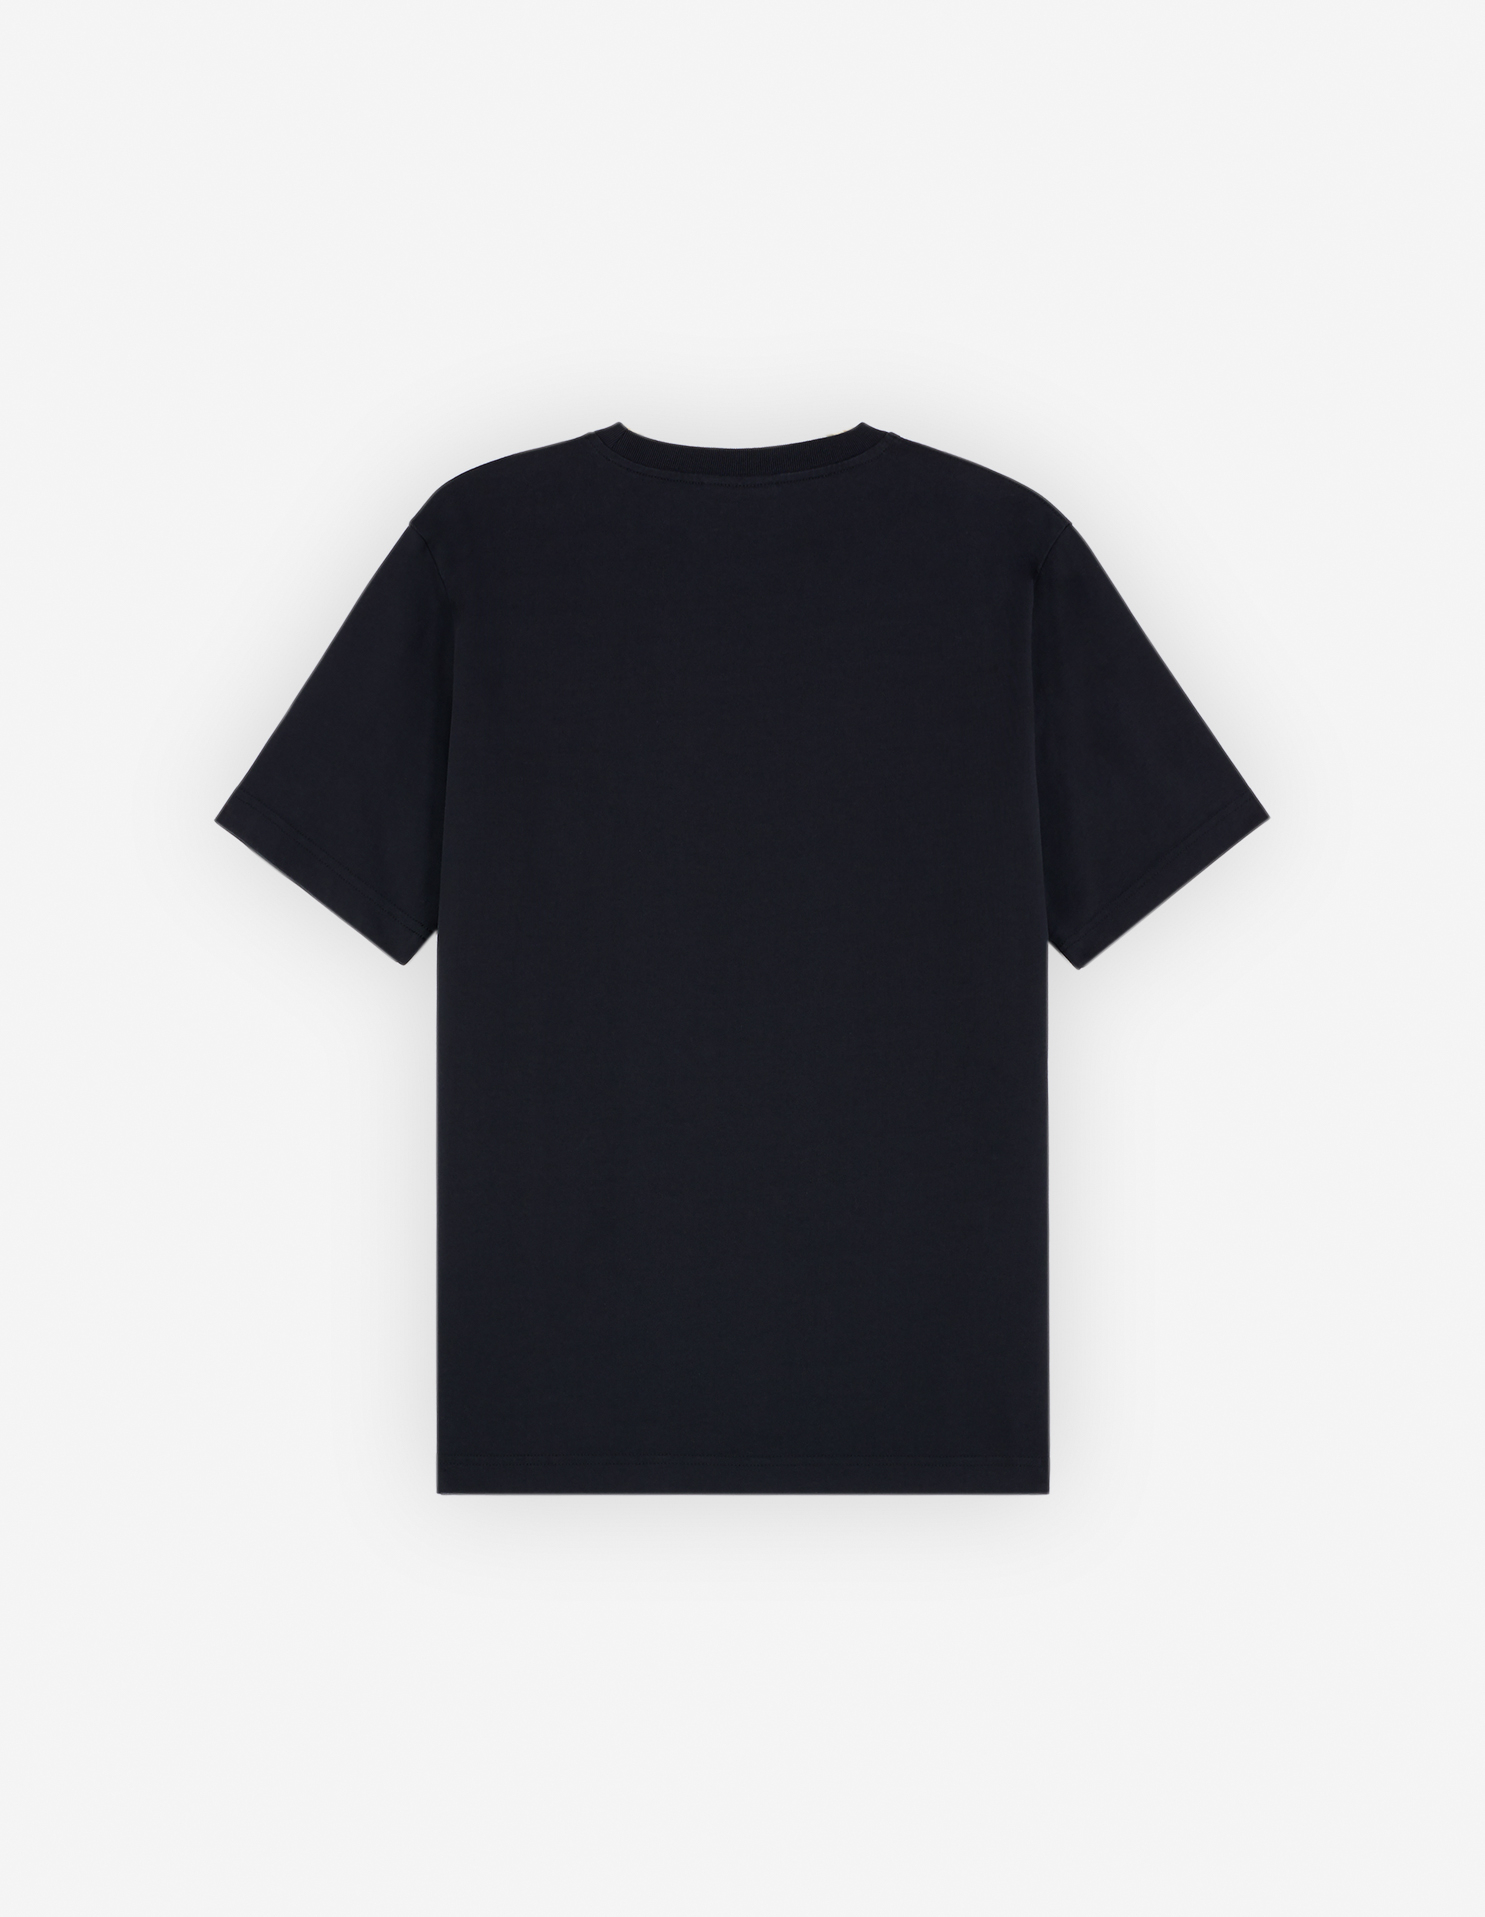 メゾン キツネ ハンドライティング コンフォート Tシャツ | Maison Kitsuné